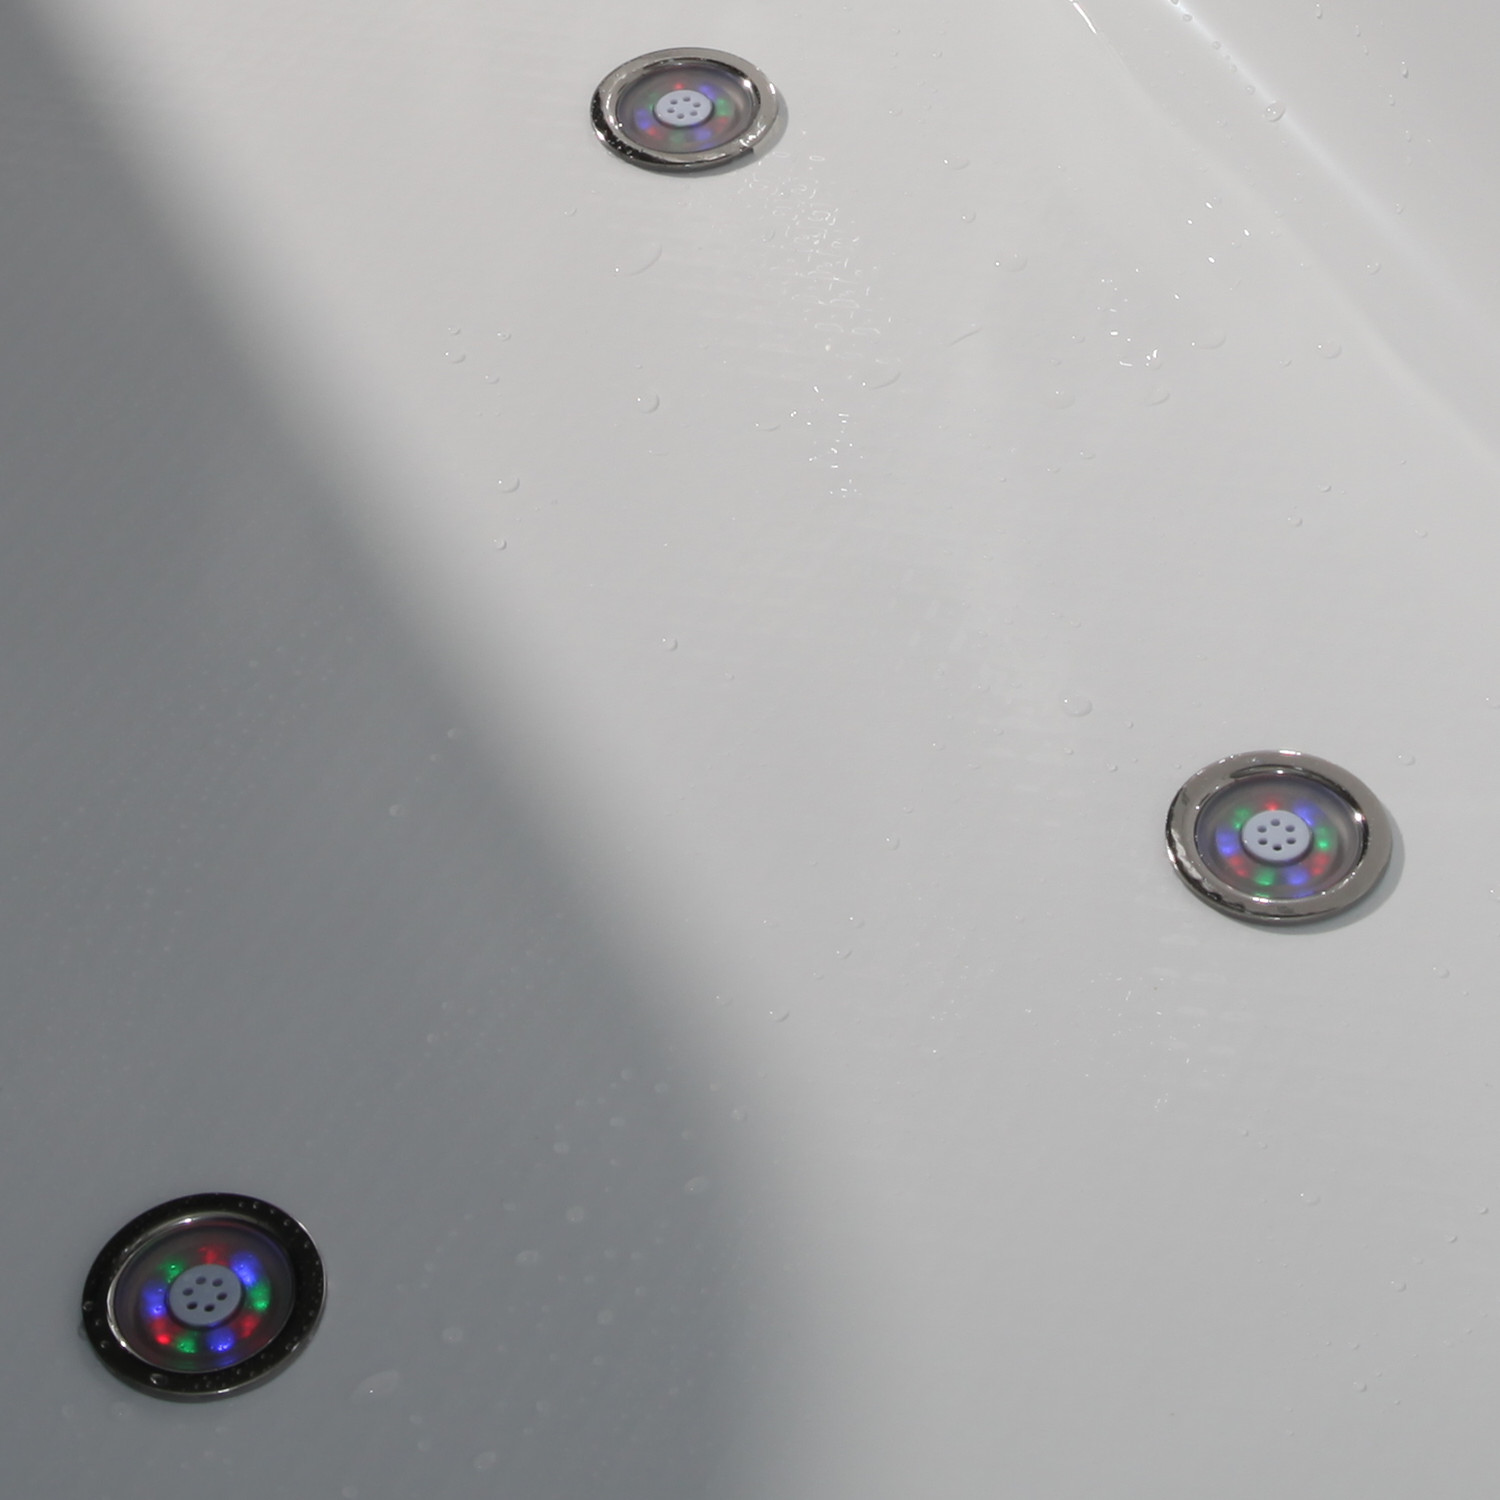 乐可意酒店家用亚克力浴缸1.55-1.65米扇形冲浪按摩泡泡浴泡澡盆